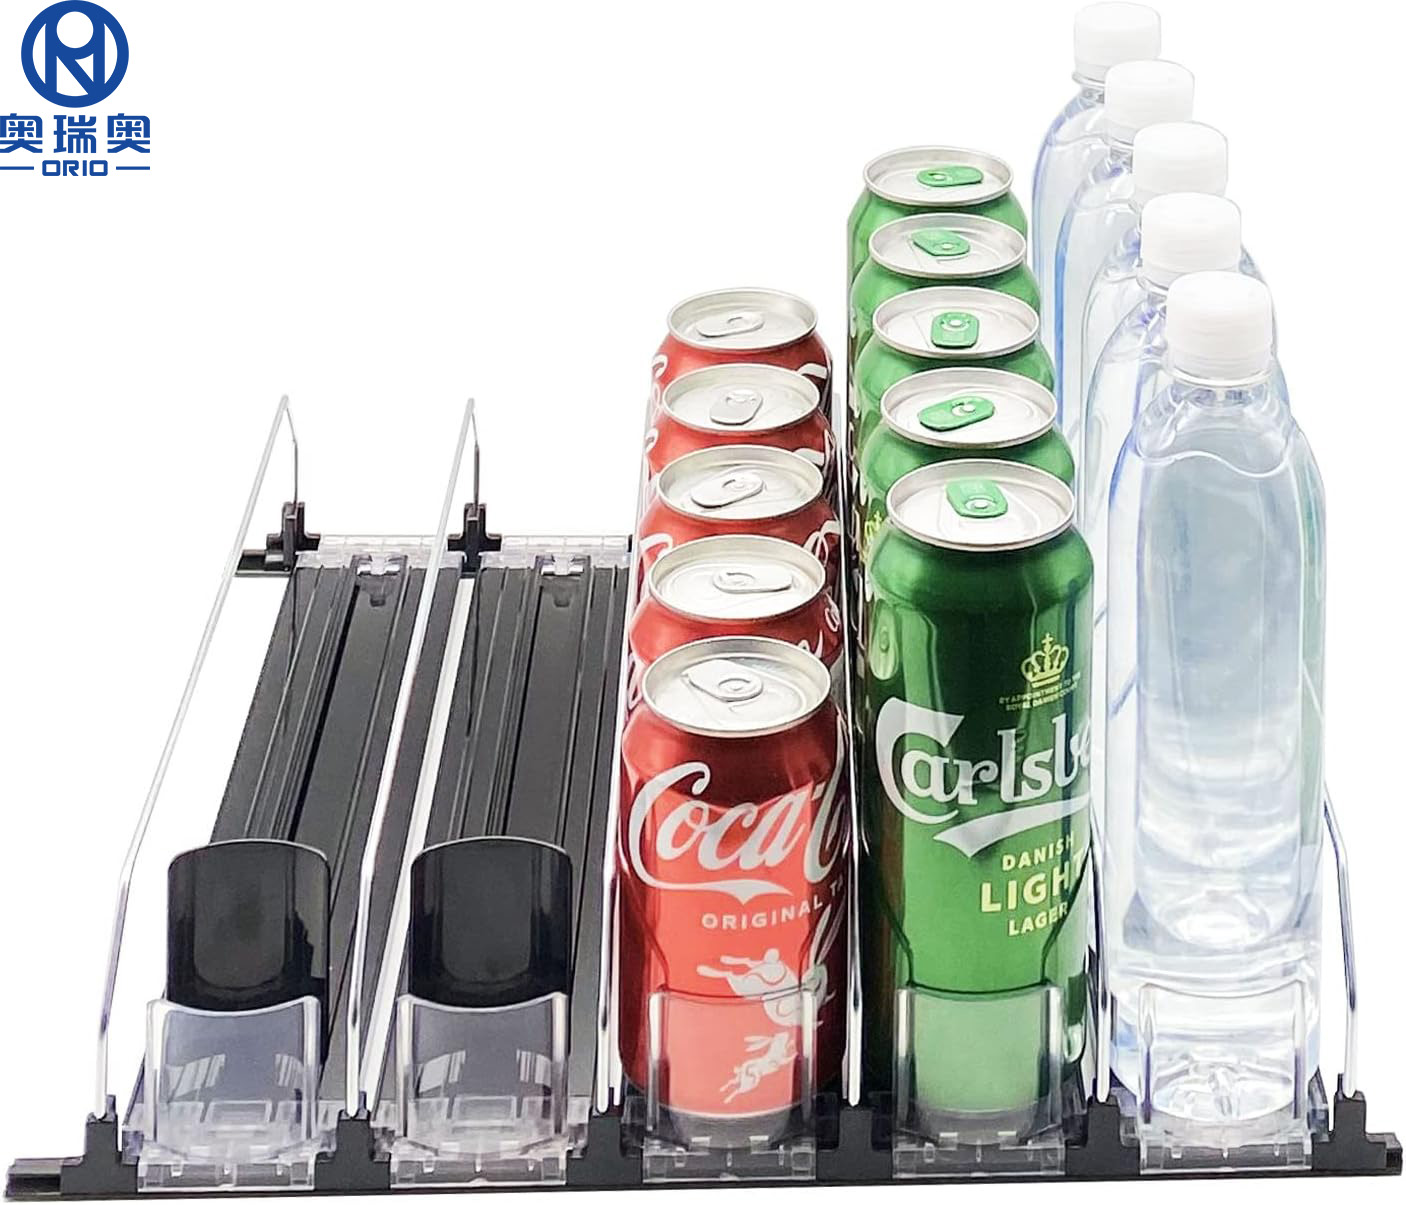 Paano i-install ang drink organizer pusher para sa Refrigerator?